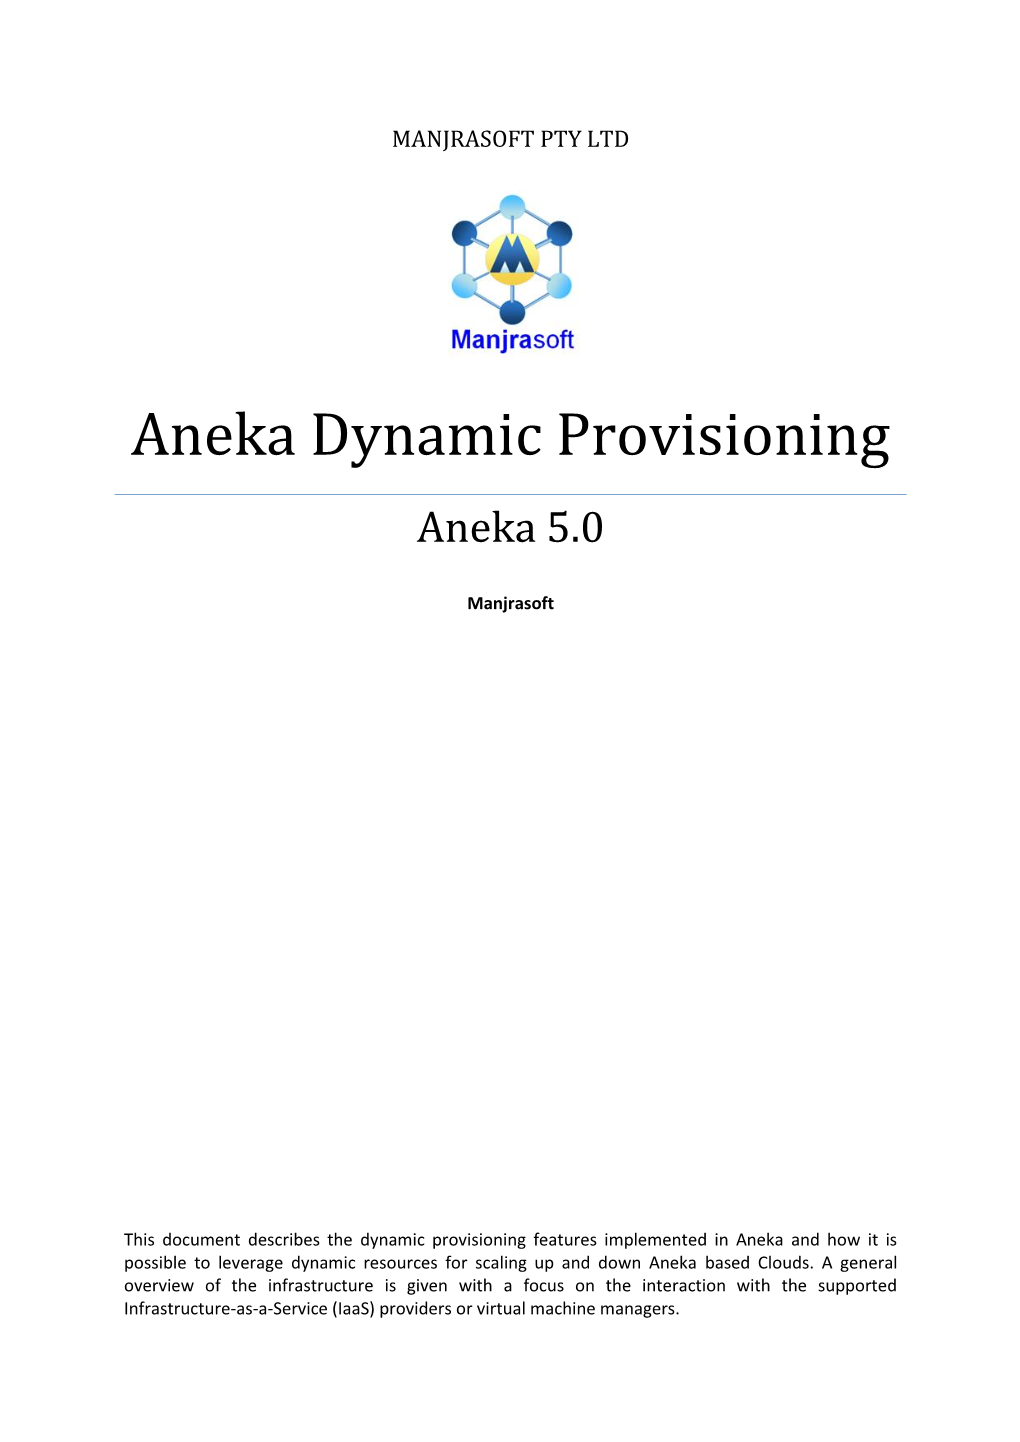 Aneka Dynamic Provisioning Aneka 5.0